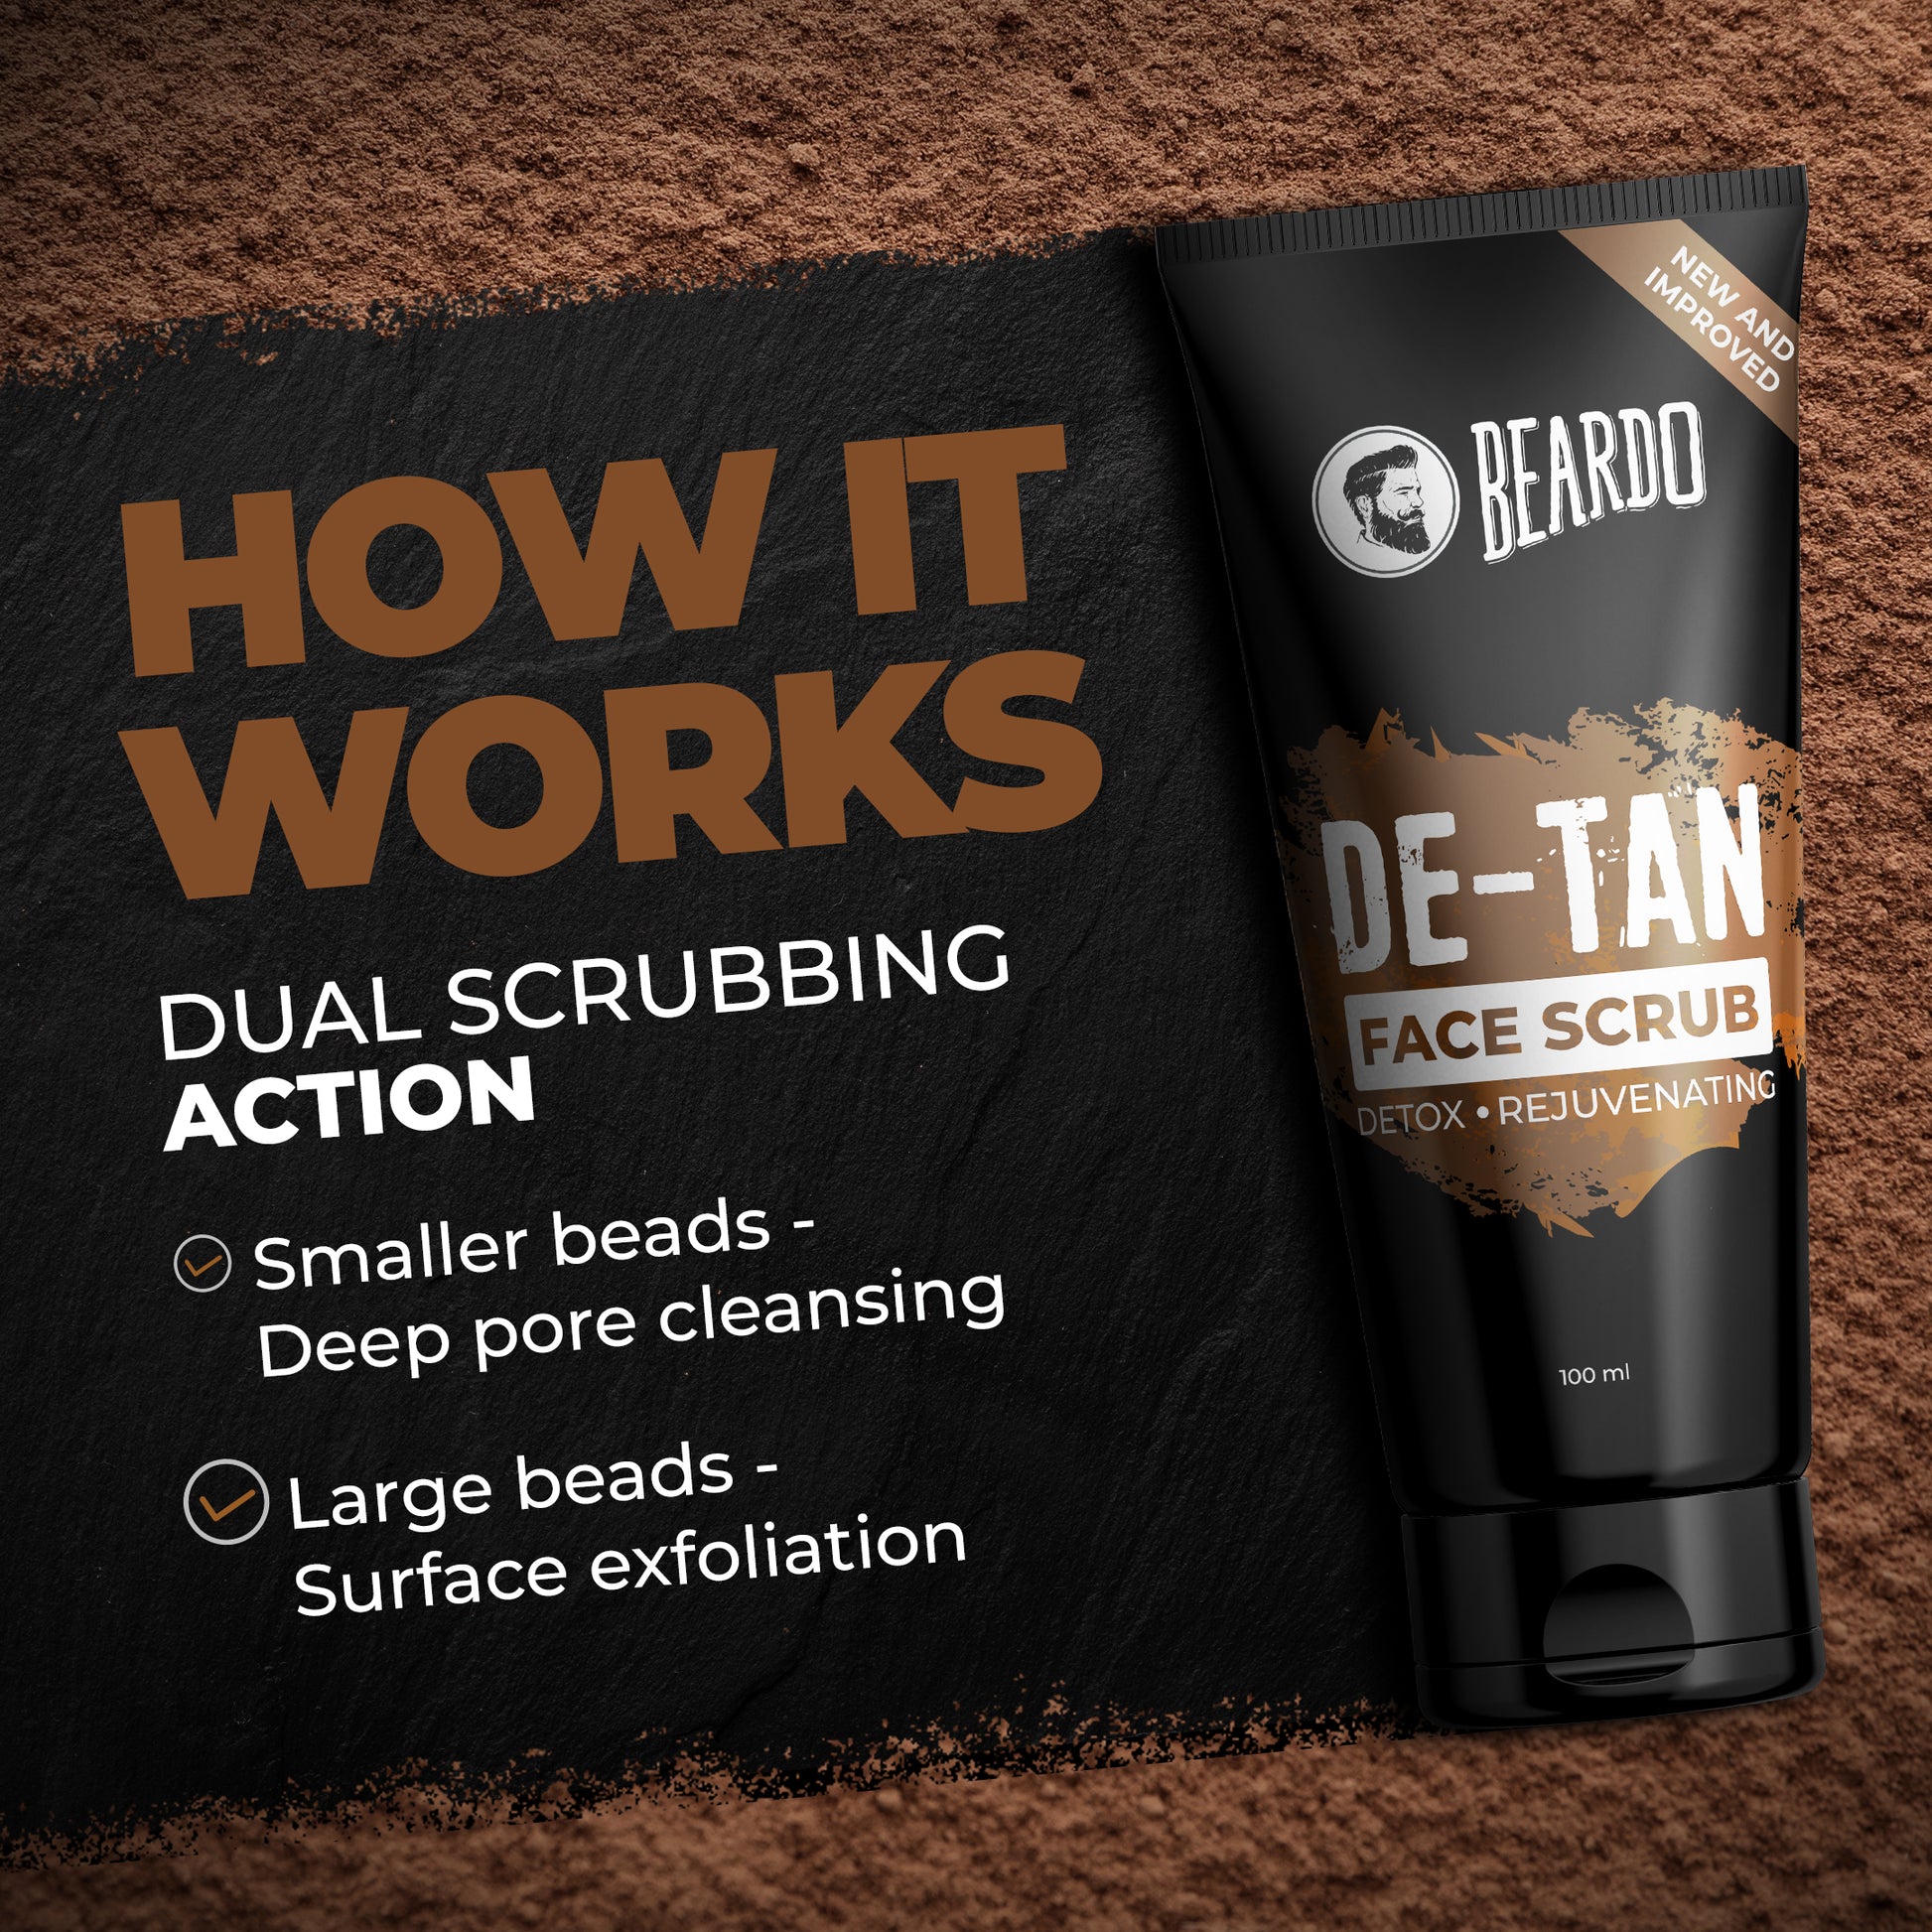 Beardo De-Tan Essentials Kit